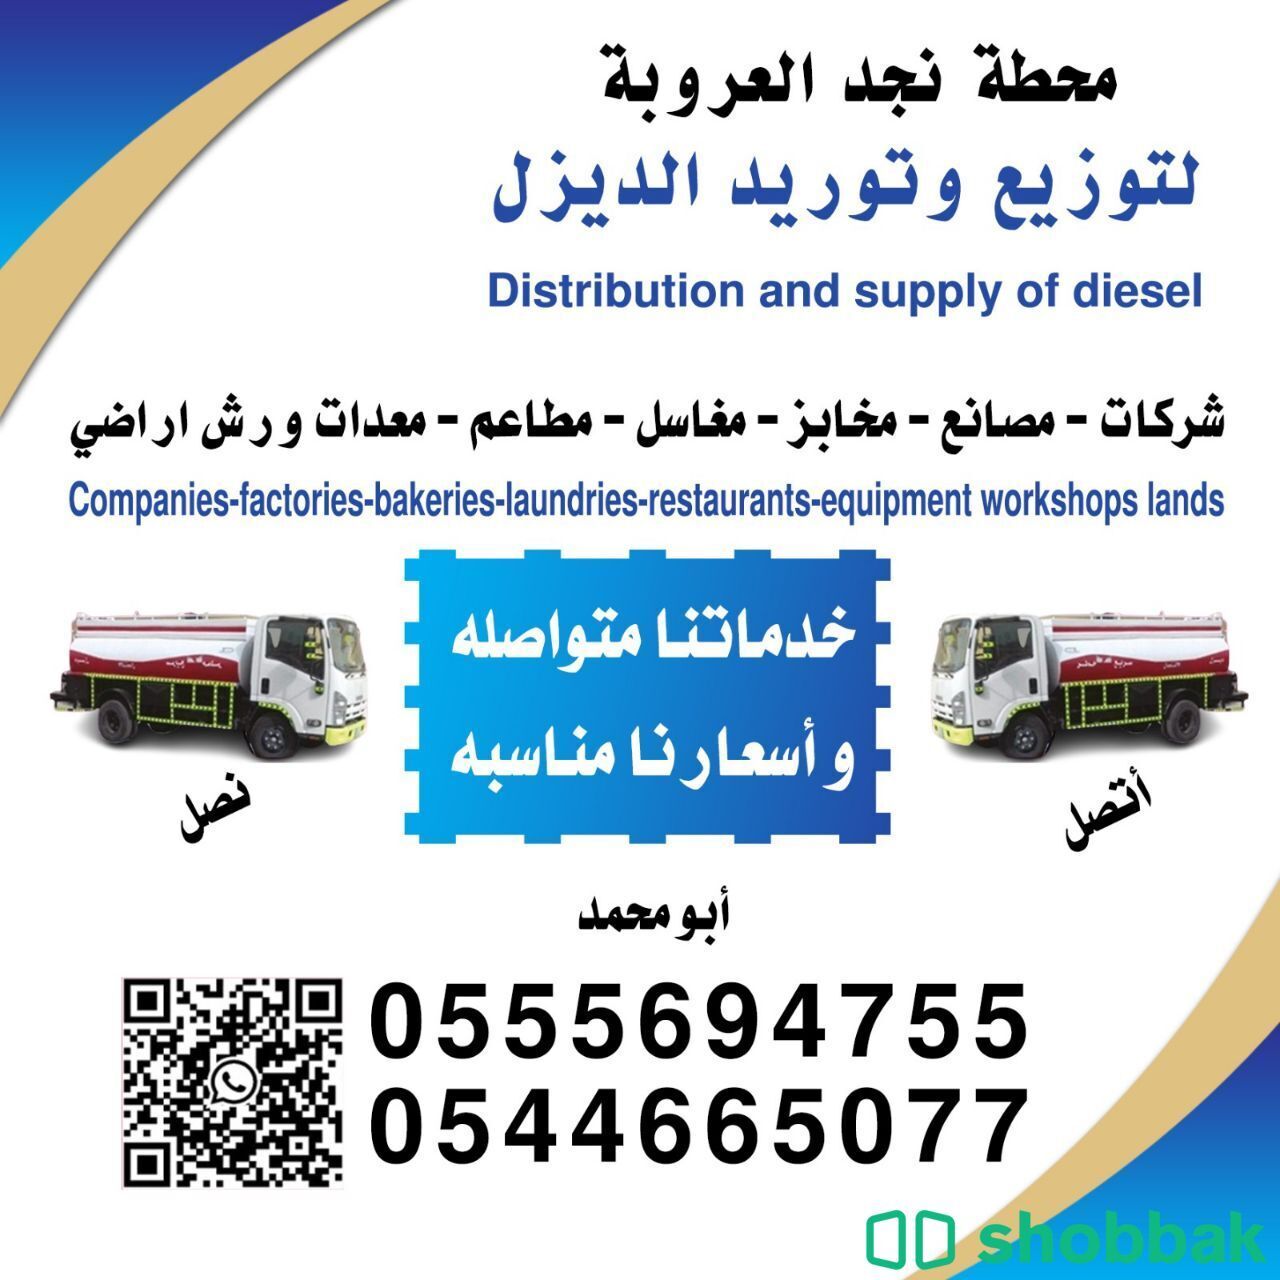 توزيع وتوريد الديزل شريكات -مؤسسات -مصانع--مخابز - مطاعم -مغاسل - معدات -ورش إرا شباك السعودية